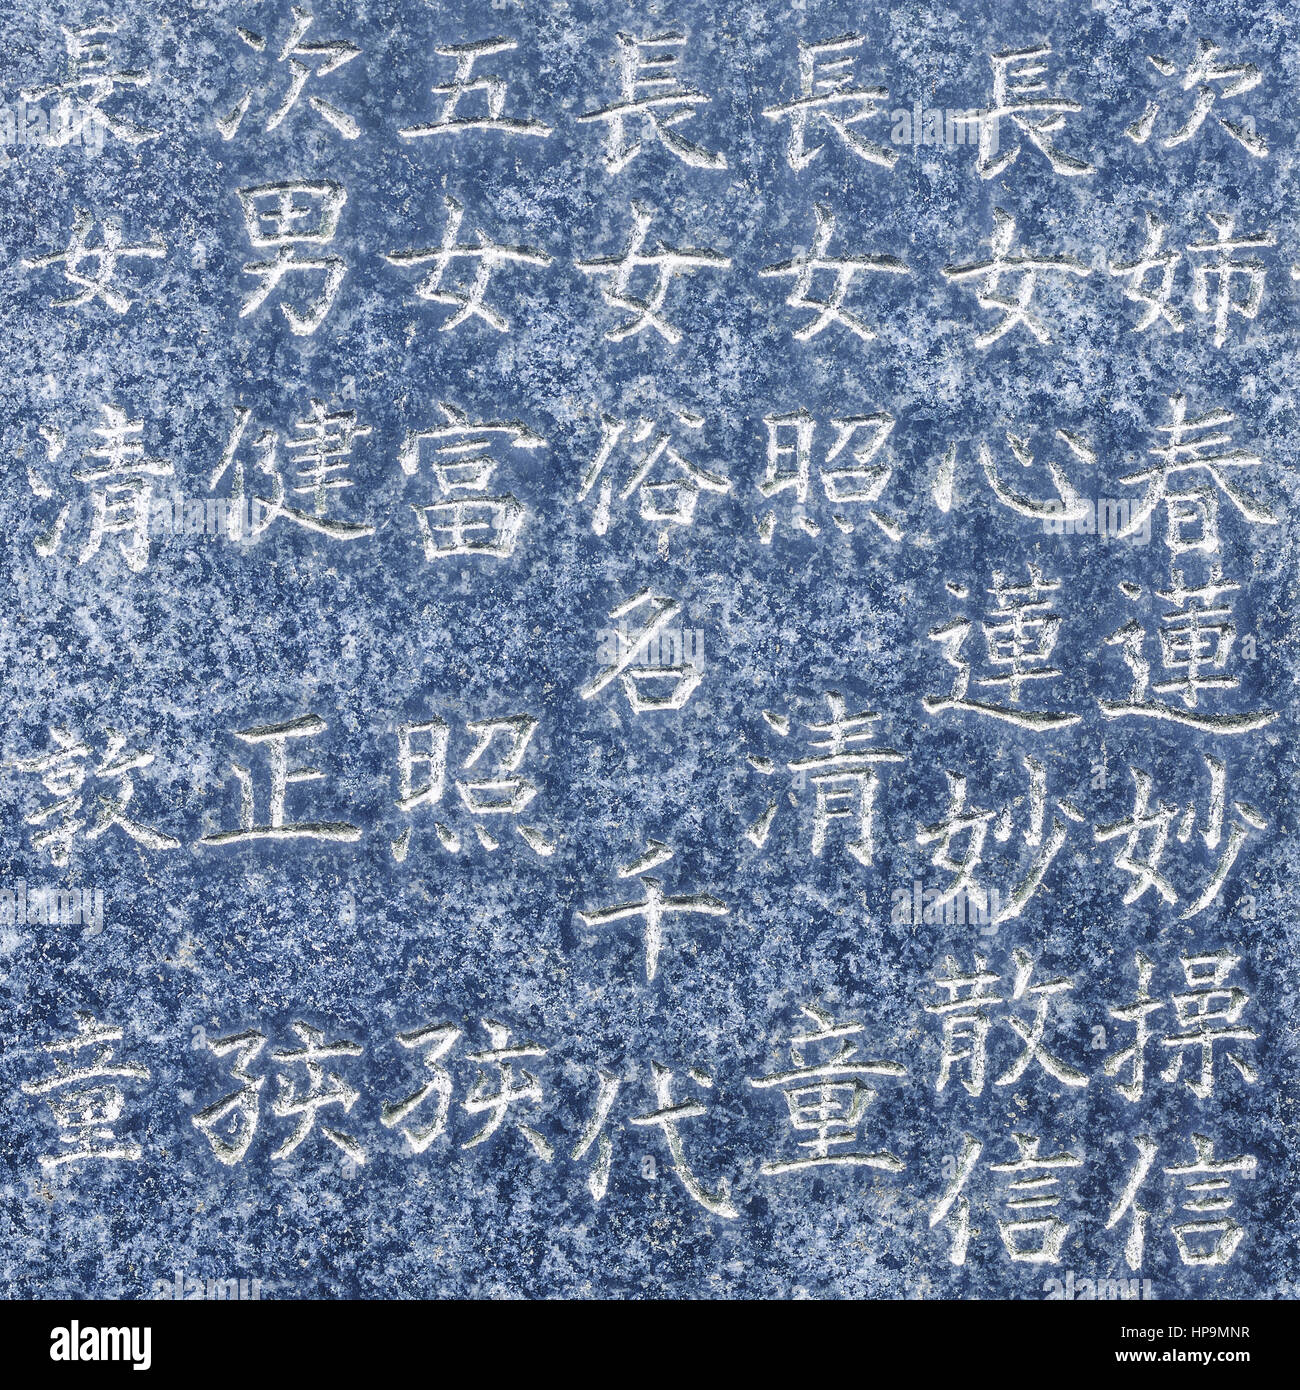 Japanische Schriftzeichen in Stein Stock Photo